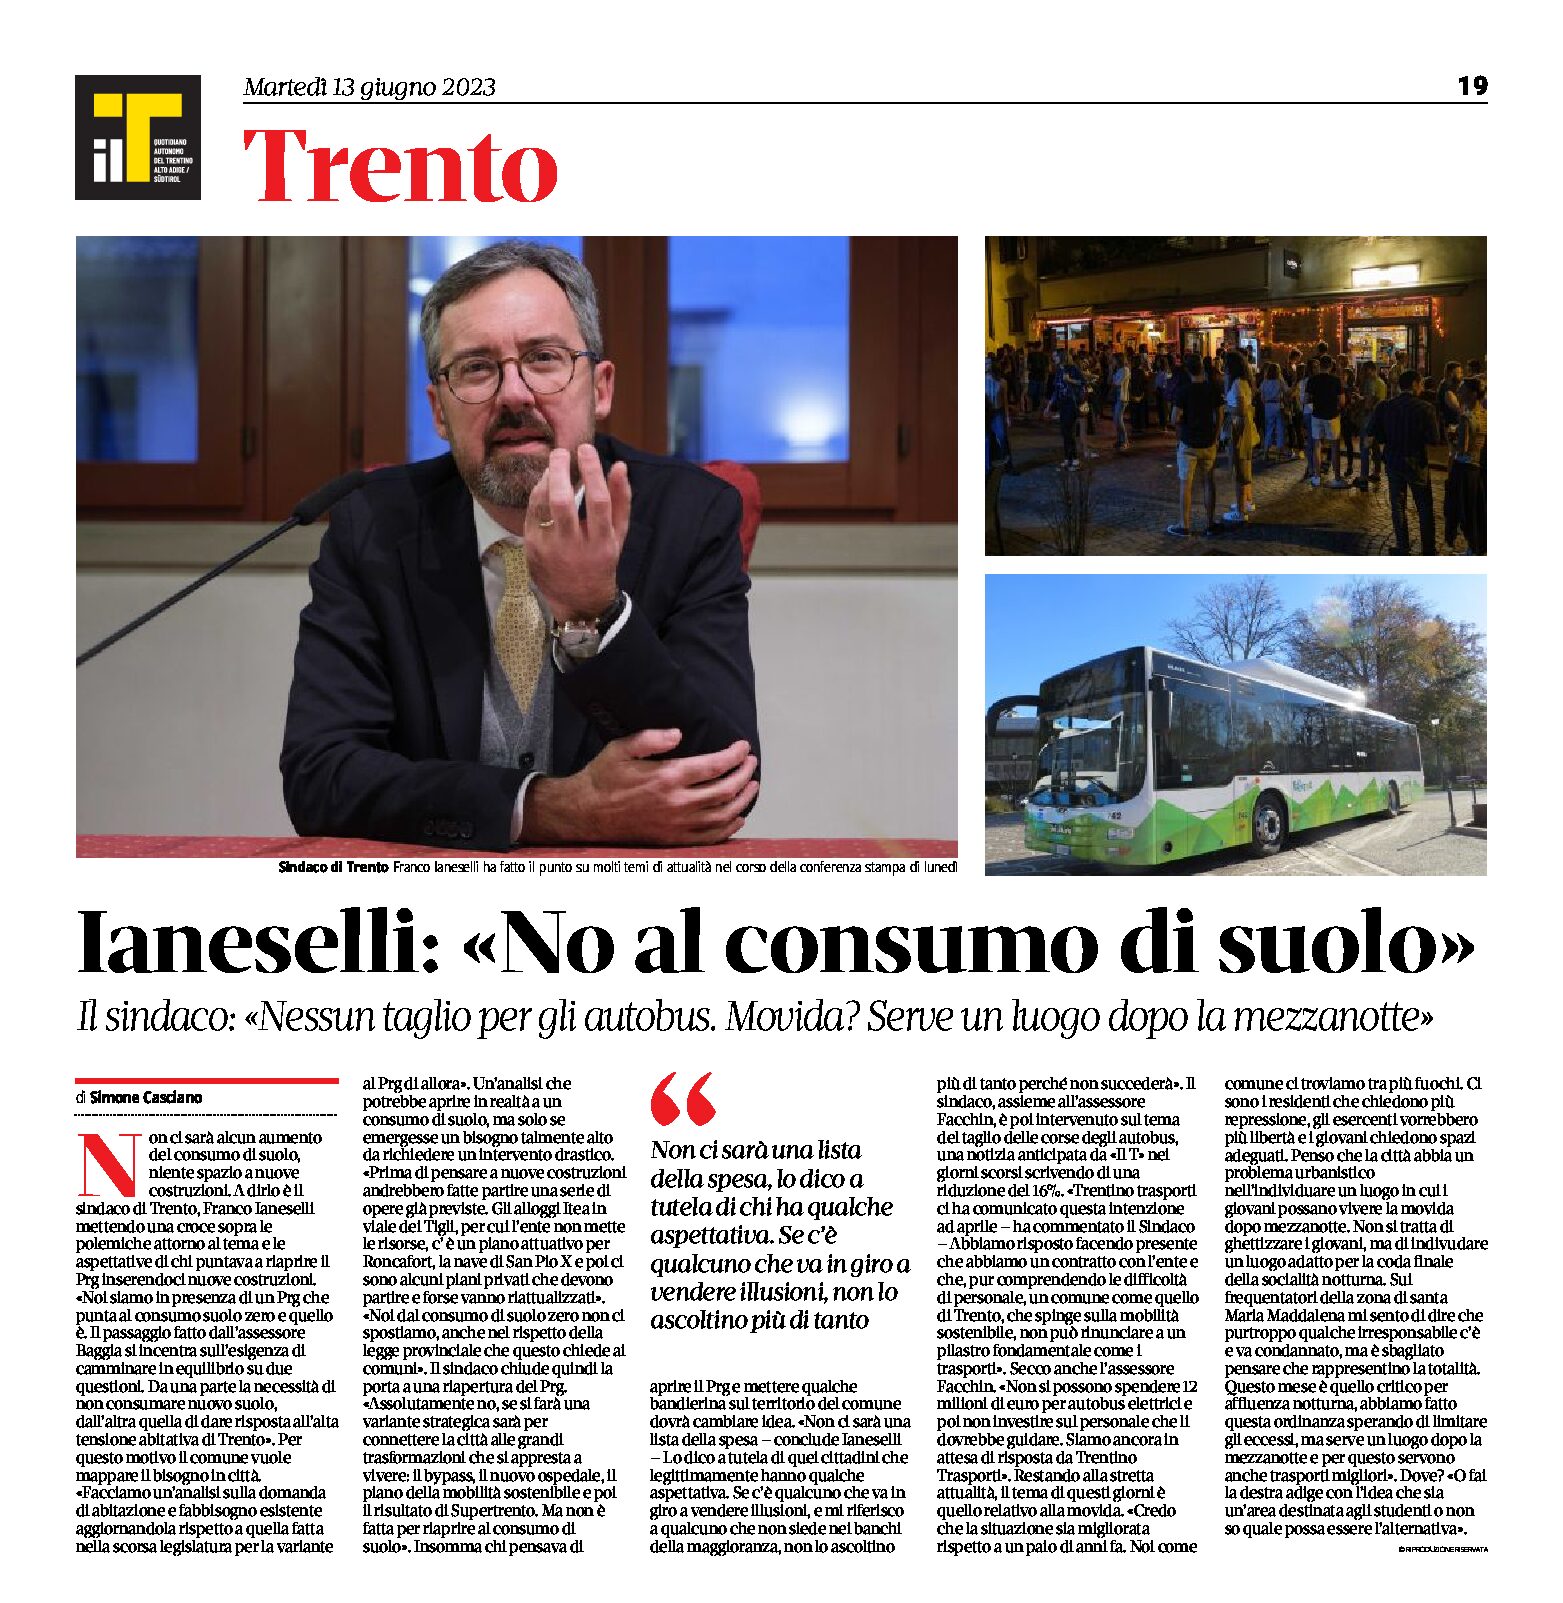 Trento, Intervista al sindaco Ianeselli: no al consumo di suolo